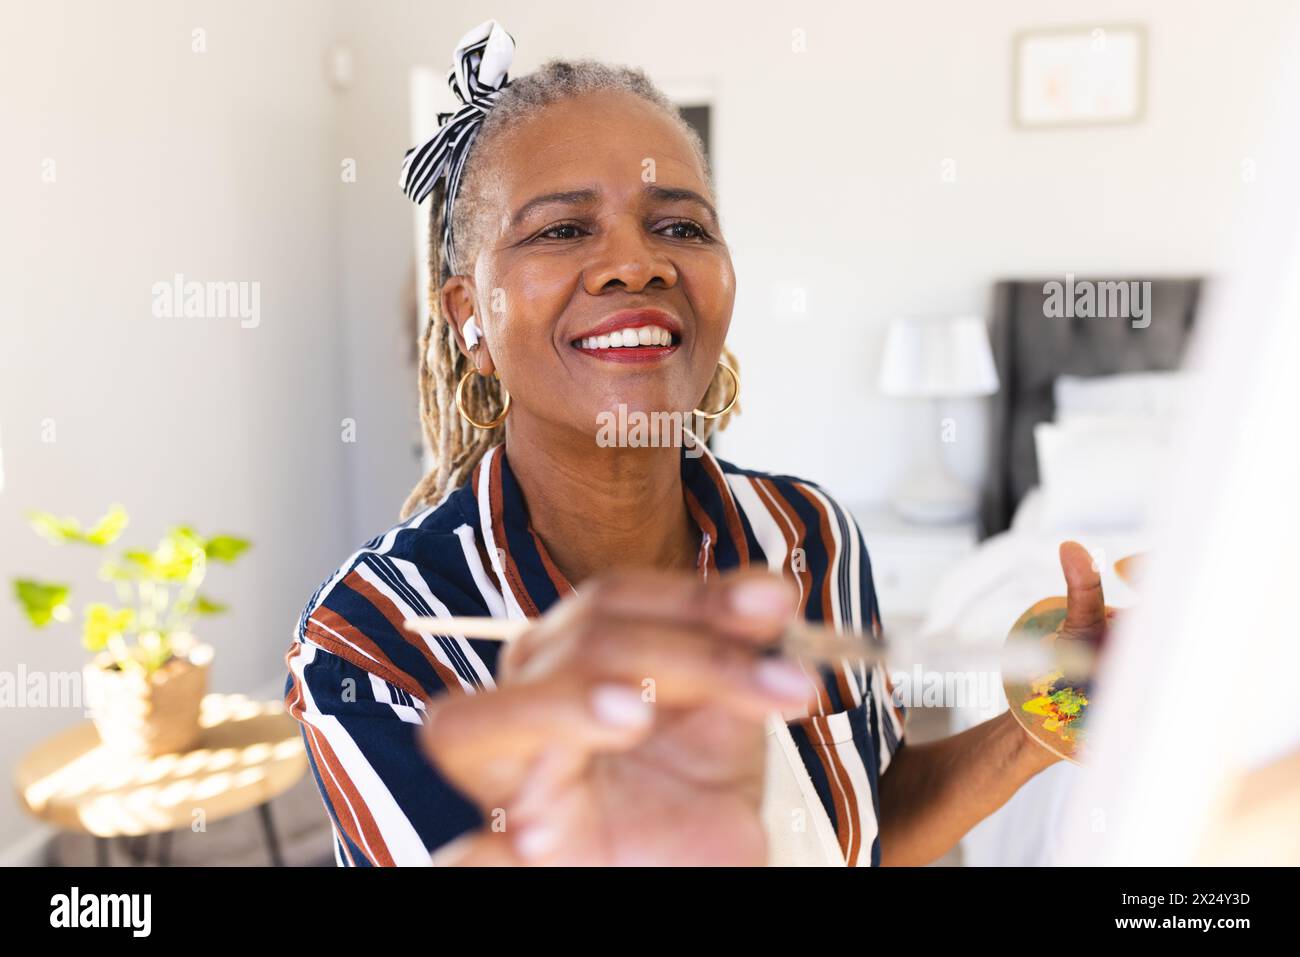 Une femme afro-américaine senior peint sur toile à la maison, souriant joyeusement. Elle a des dreadlocks gris, porte une chemise rayée, et un bandeau, unalt Banque D'Images